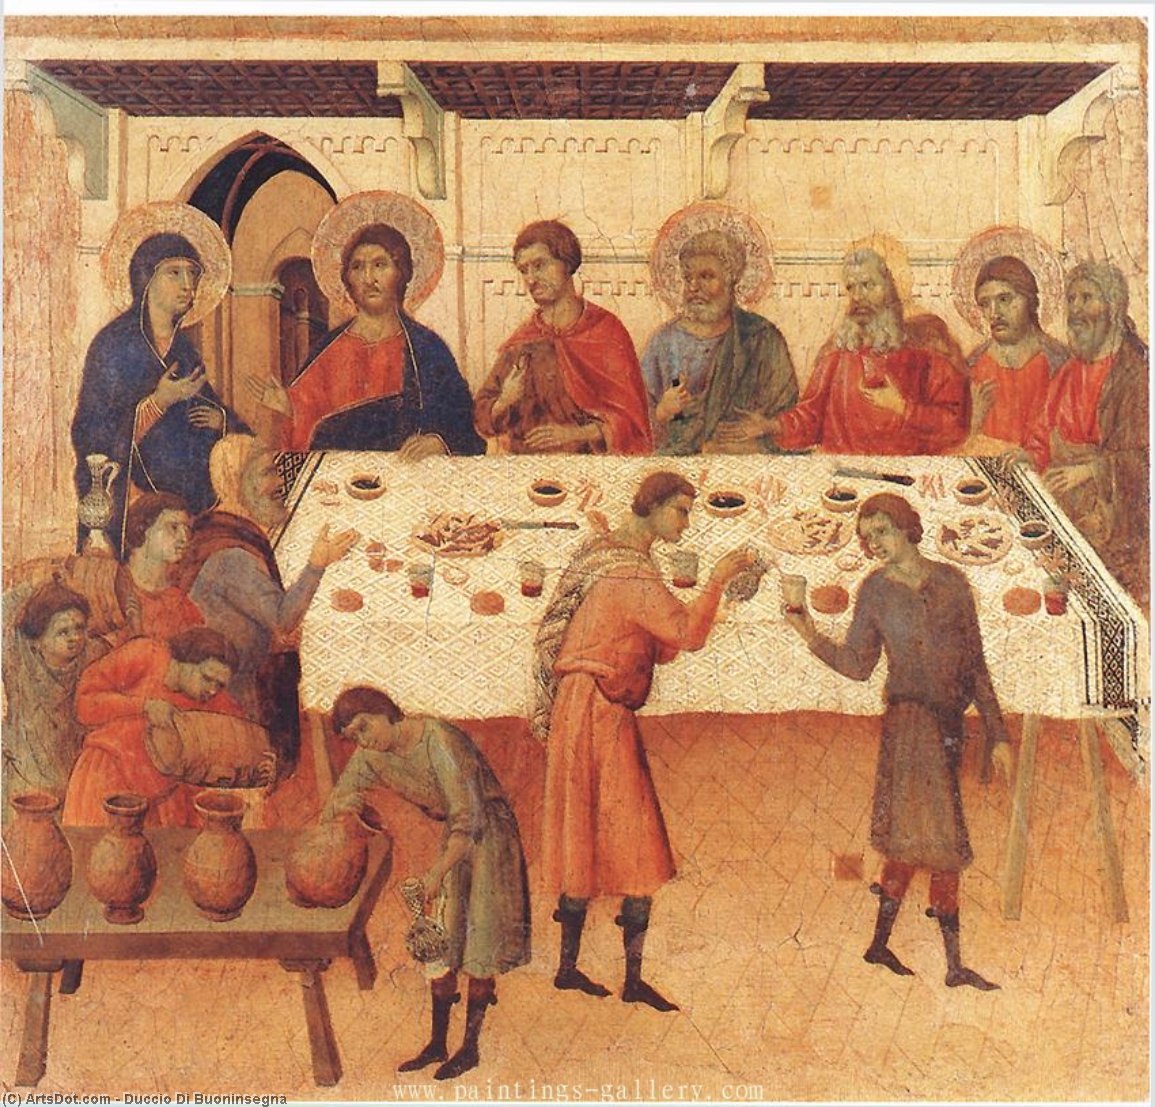 WikiOO.org - Encyclopedia of Fine Arts - Maleri, Artwork Duccio Di Buoninsegna - Wedding at Cana